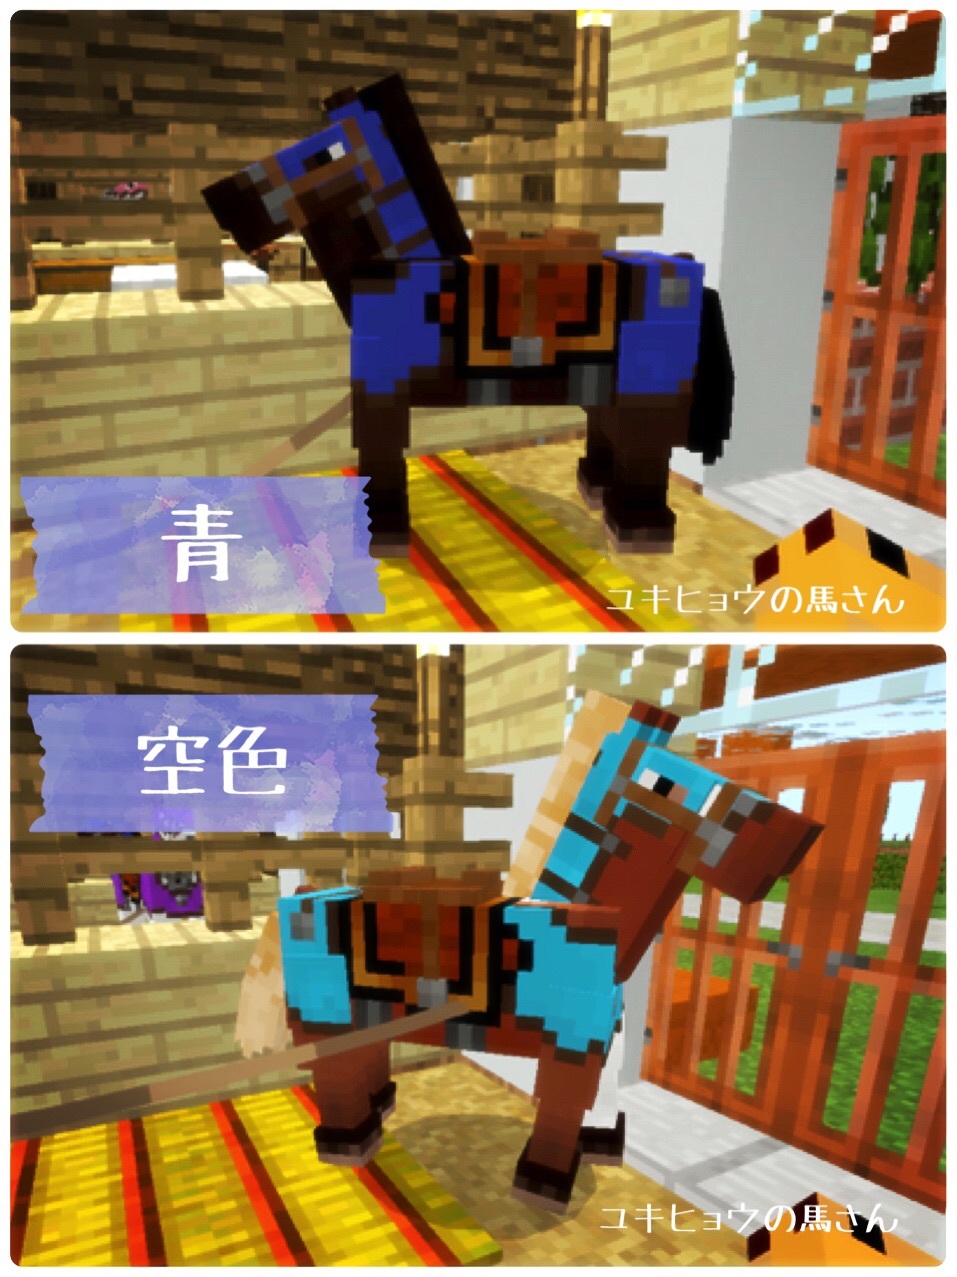 96頁 馬小屋のアレをアレするガオ 革の馬鎧の１６色染色 笑 Nohohon Minecraft